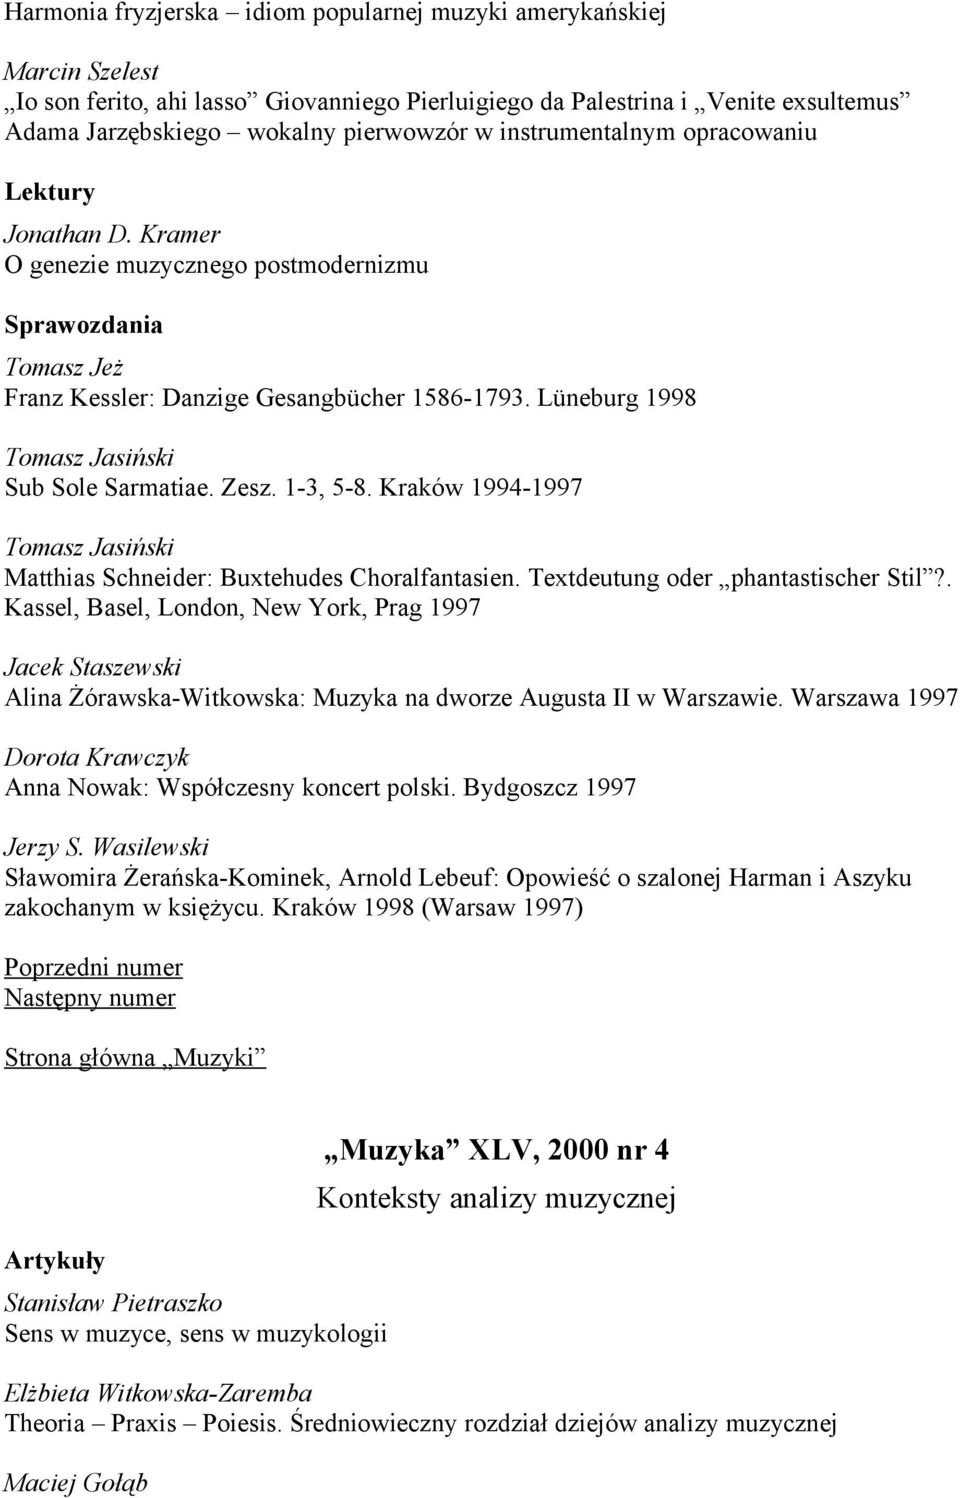 Kraków 1994-1997 Matthias Schneider: Buxtehudes Choralfantasien. Textdeutung oder phantastischer Stil?